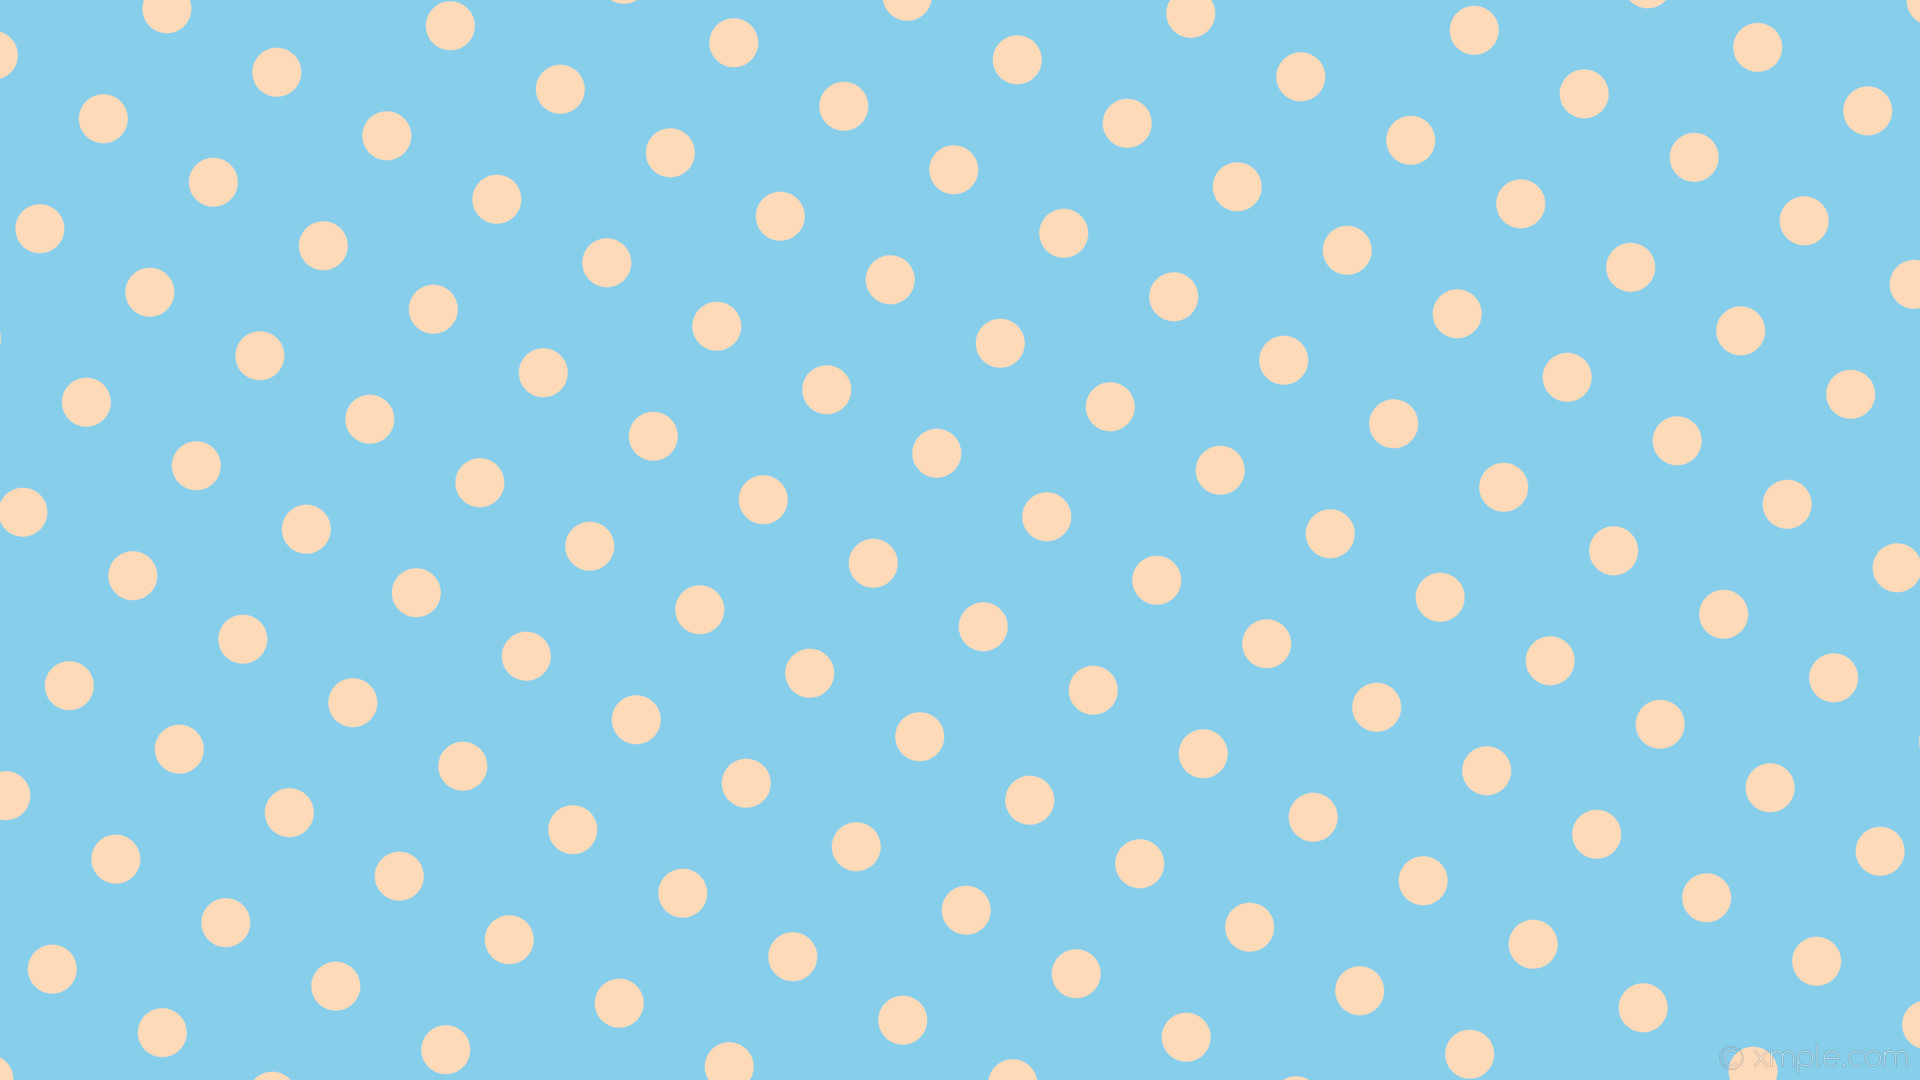 1920x1080 wallpaper spots polka dots blue yellow sky blue peach puff #87ceeb #ffdab9  330Â°